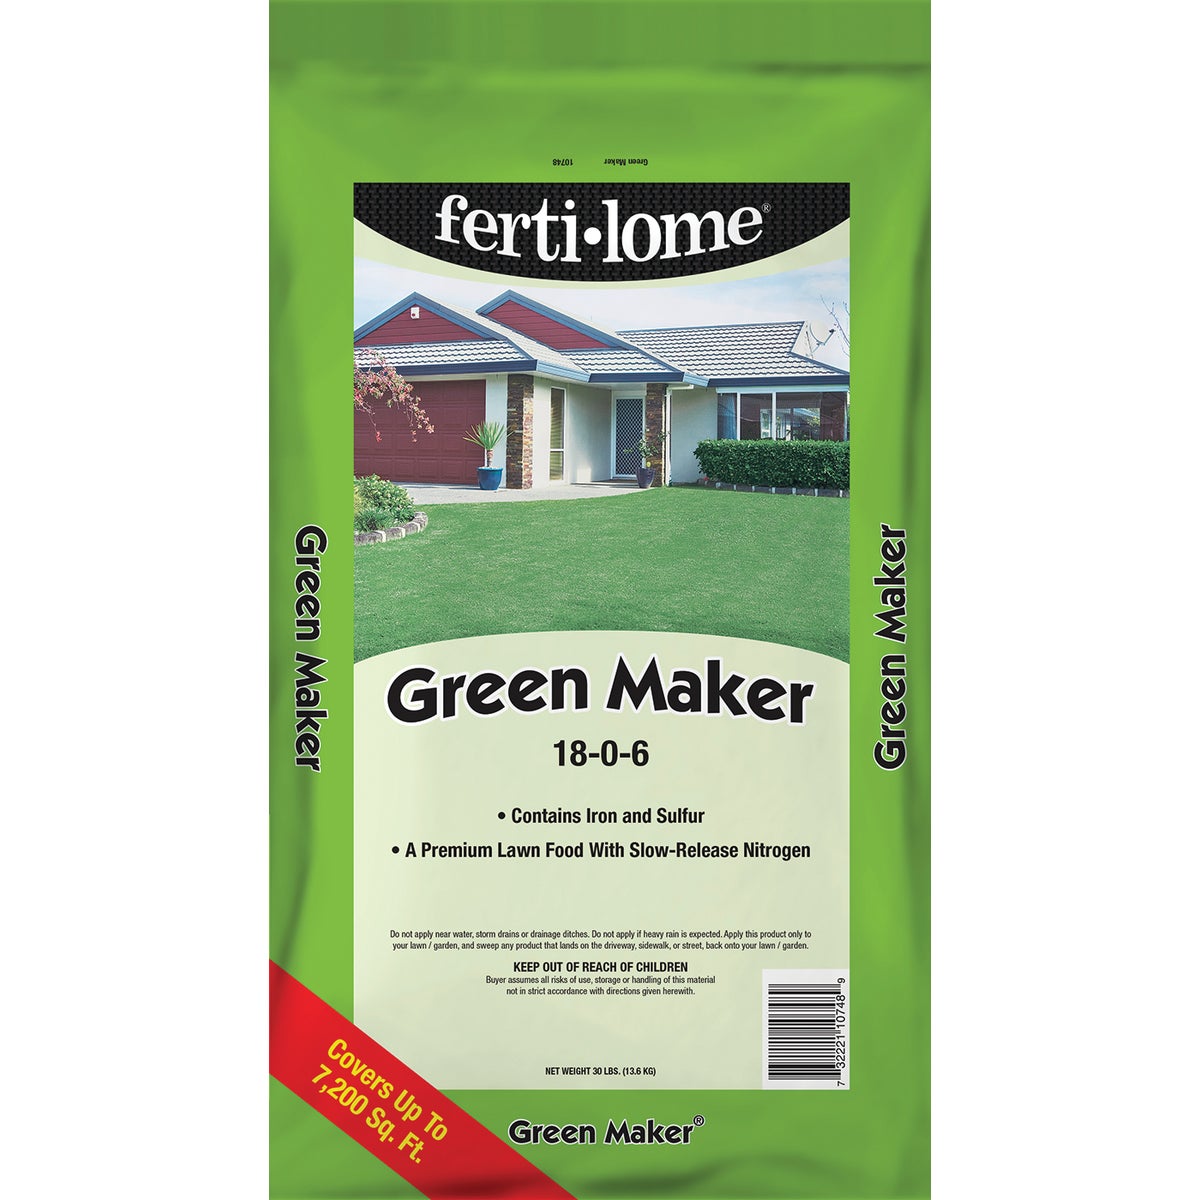 Ferti-lome Green Maker 30 Lb. 7200 Sq. Ft. 18-0-6 Lawn Fertilizer